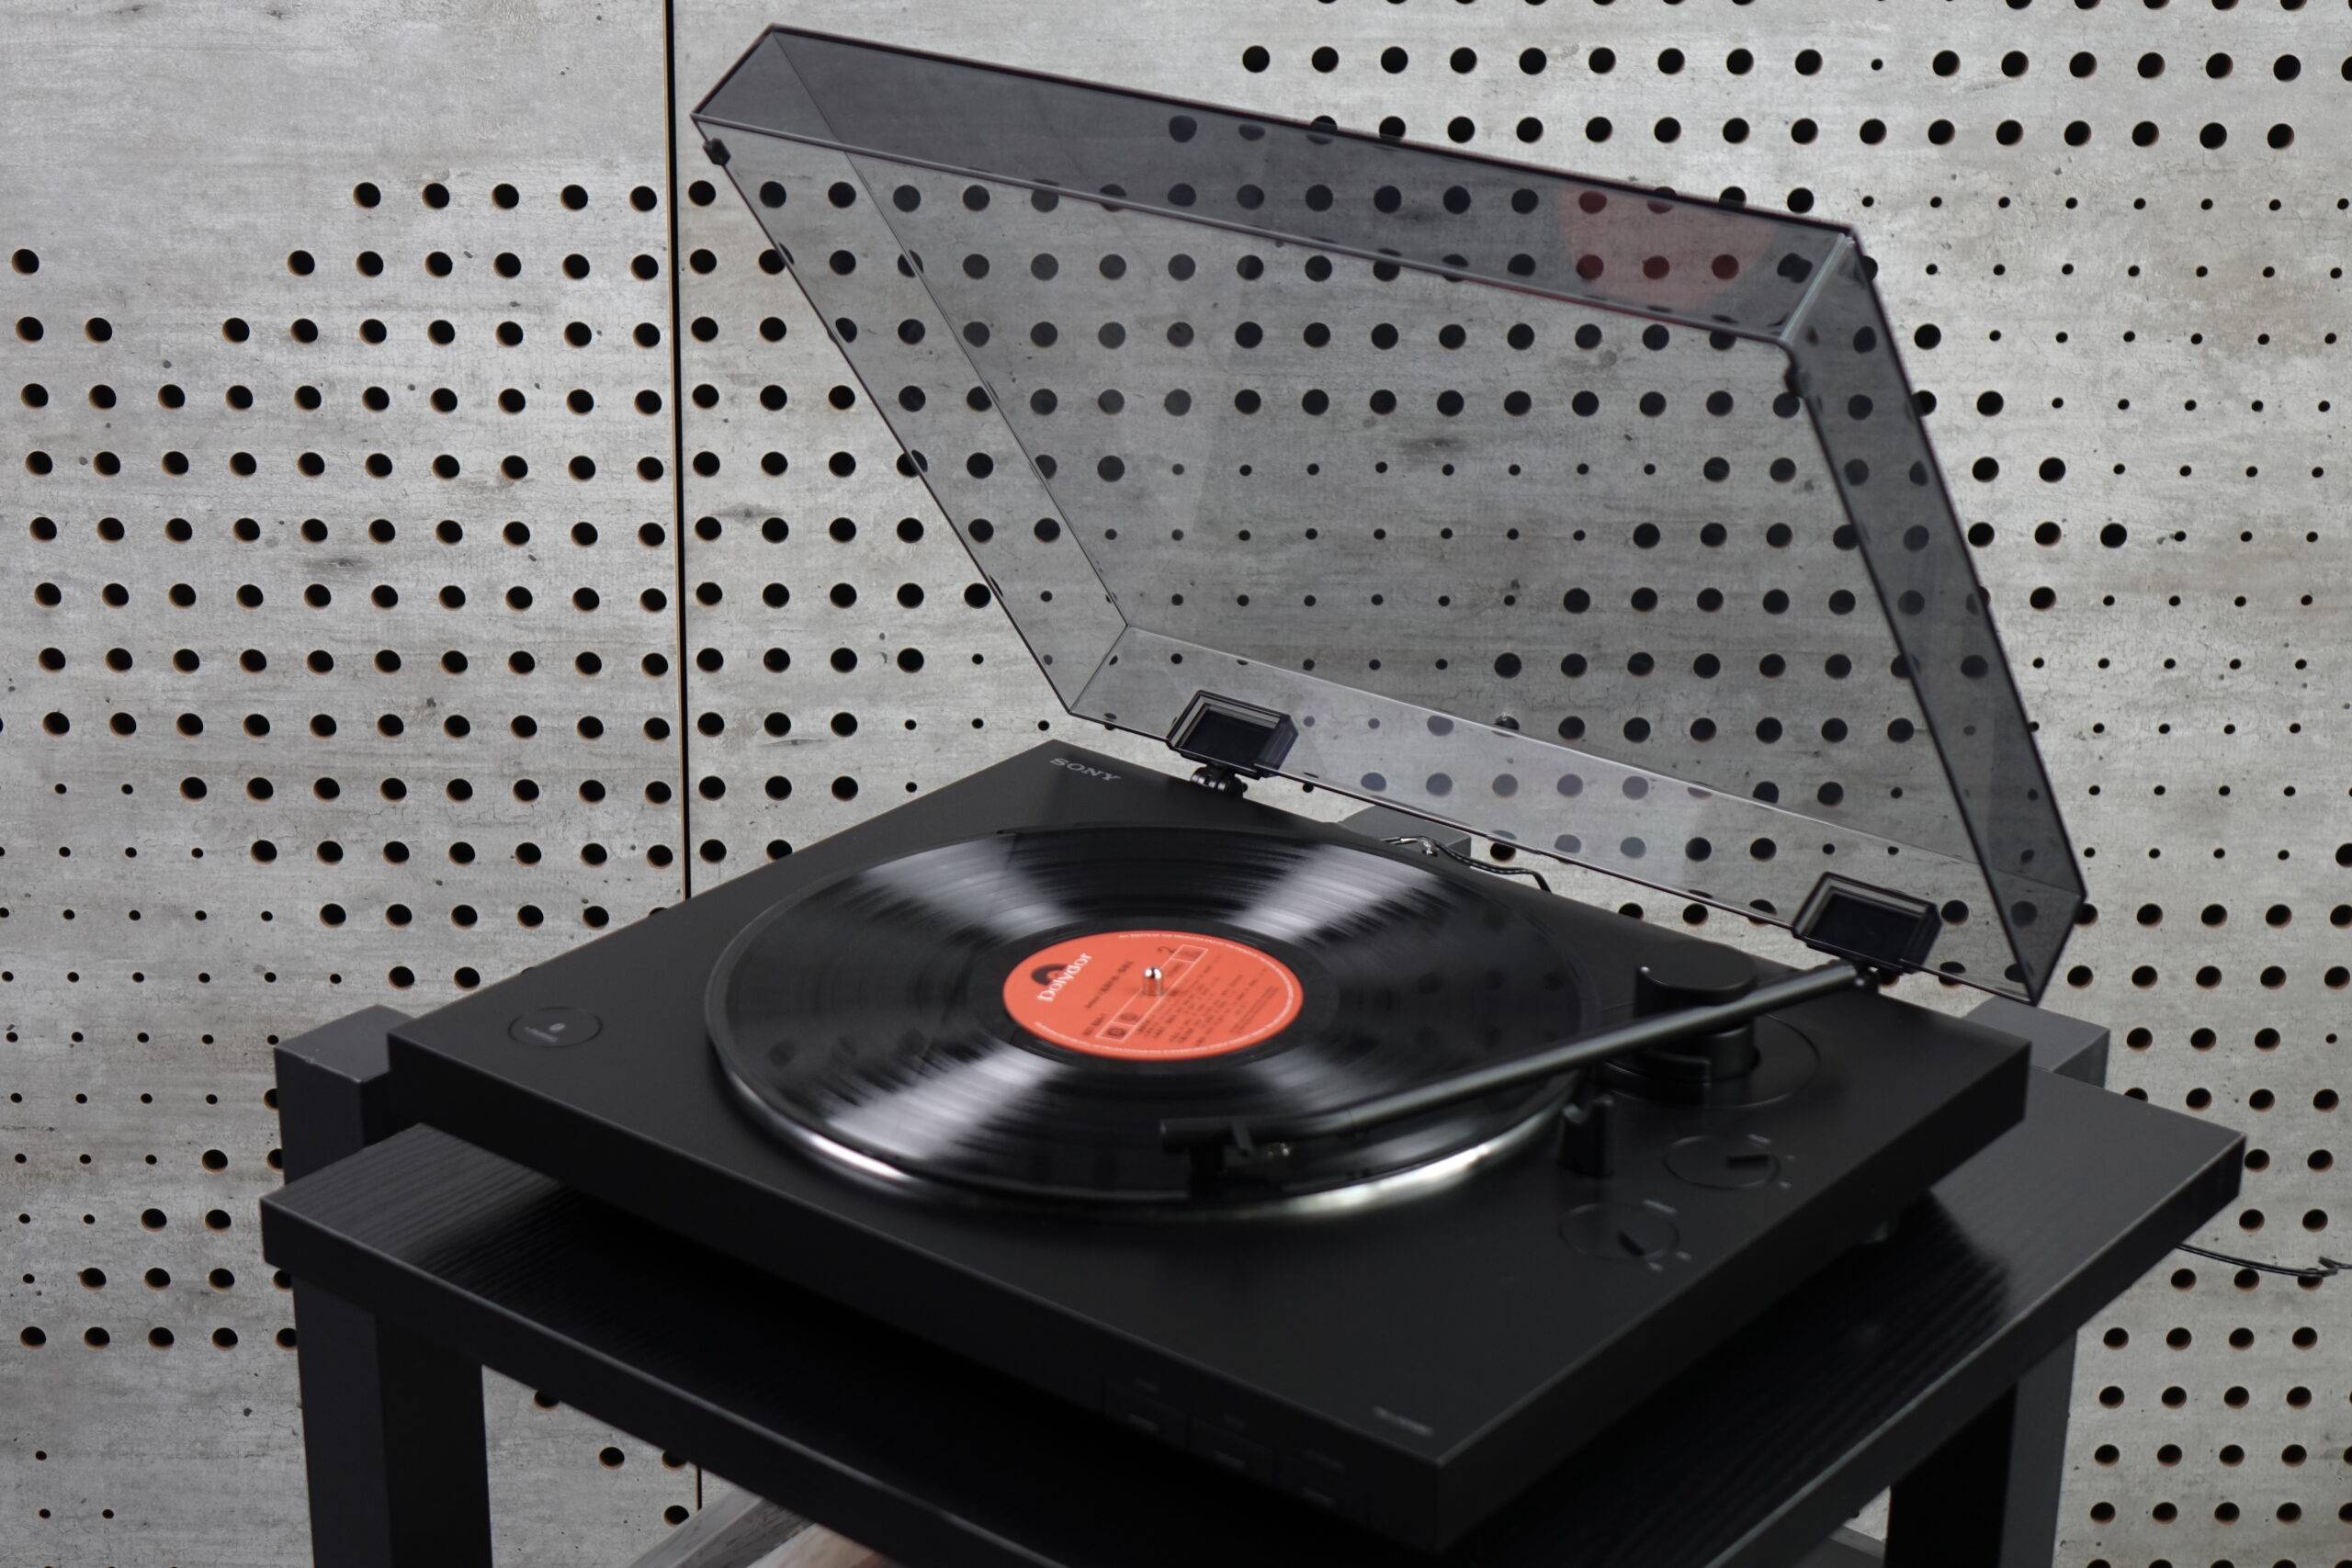 推荐丨"摆脱繁琐的连接,轻松提升生活品质"sony ps-lx310bt黑胶唱片机